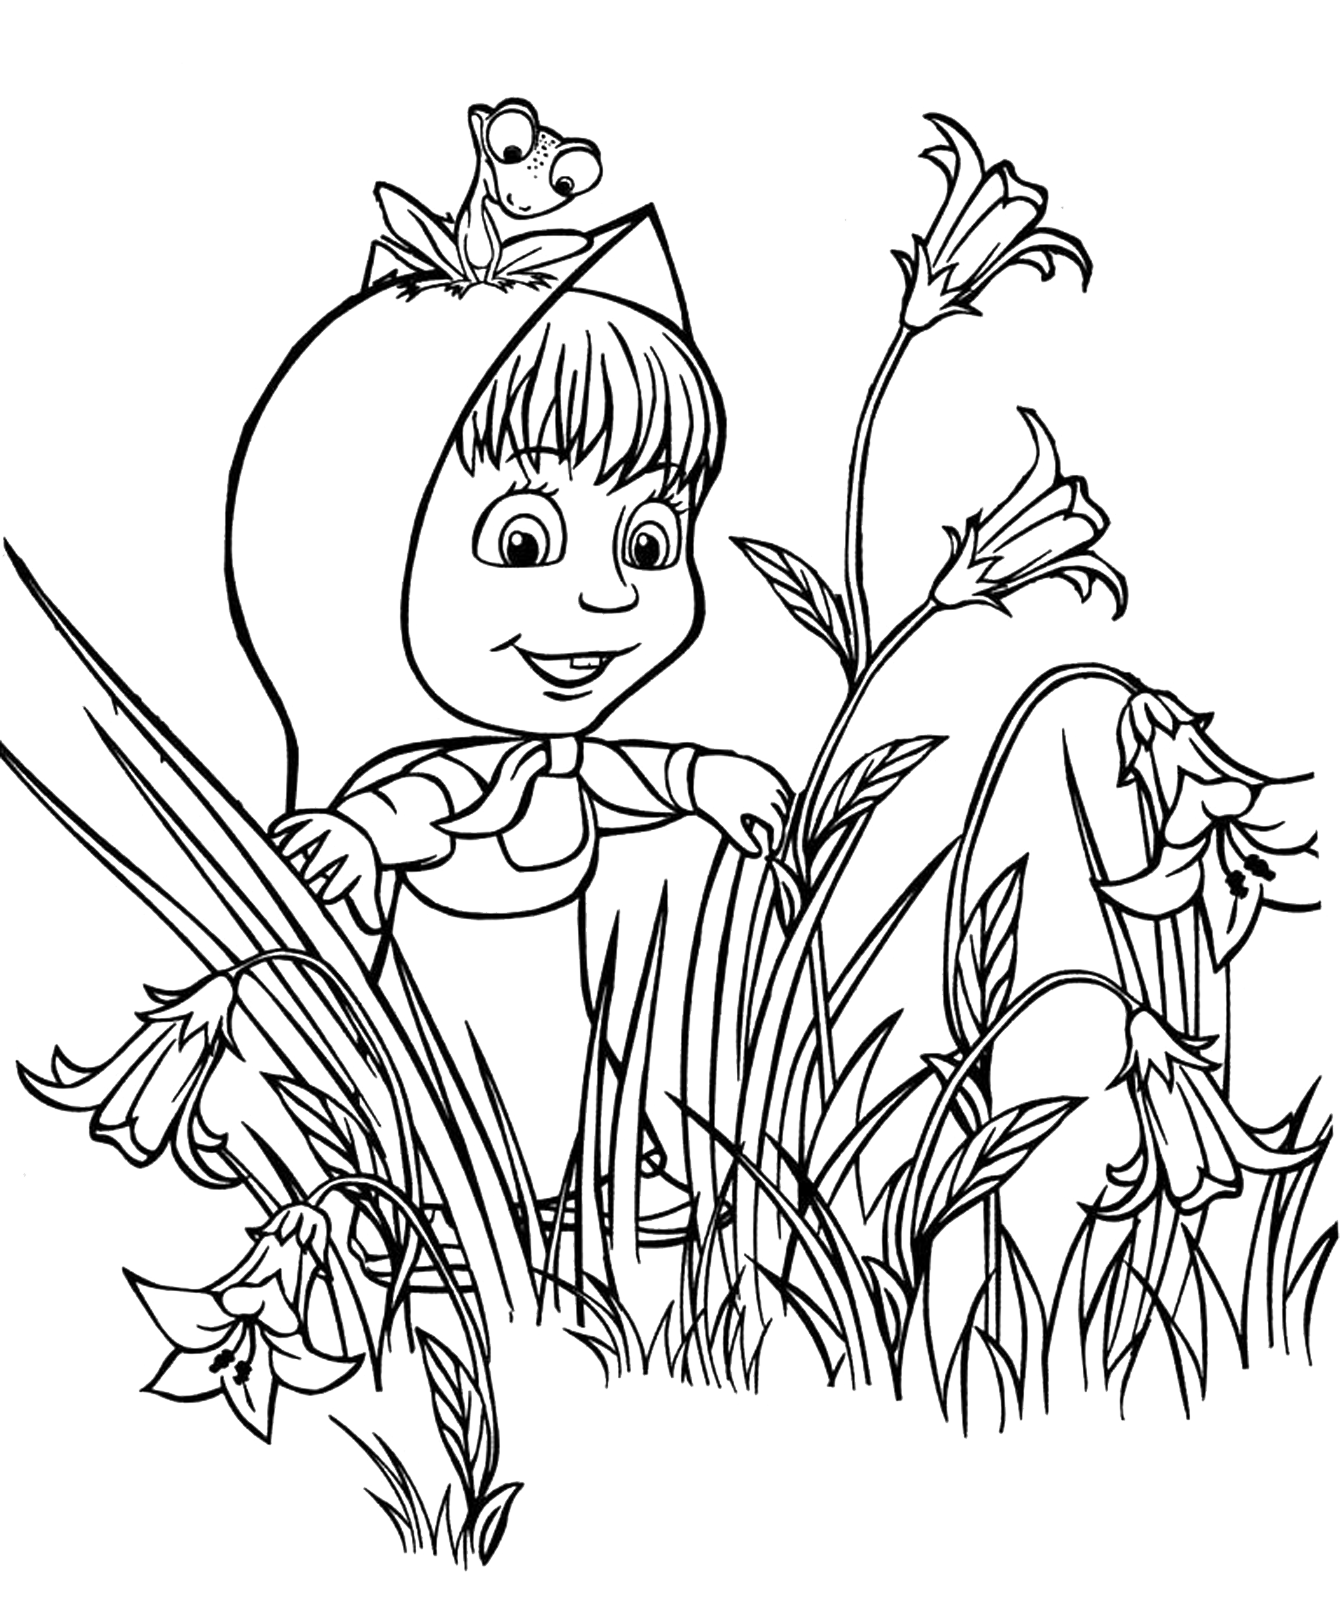 Masha e Orso - Masha in mezzo ai fiori con una rana sulla testa